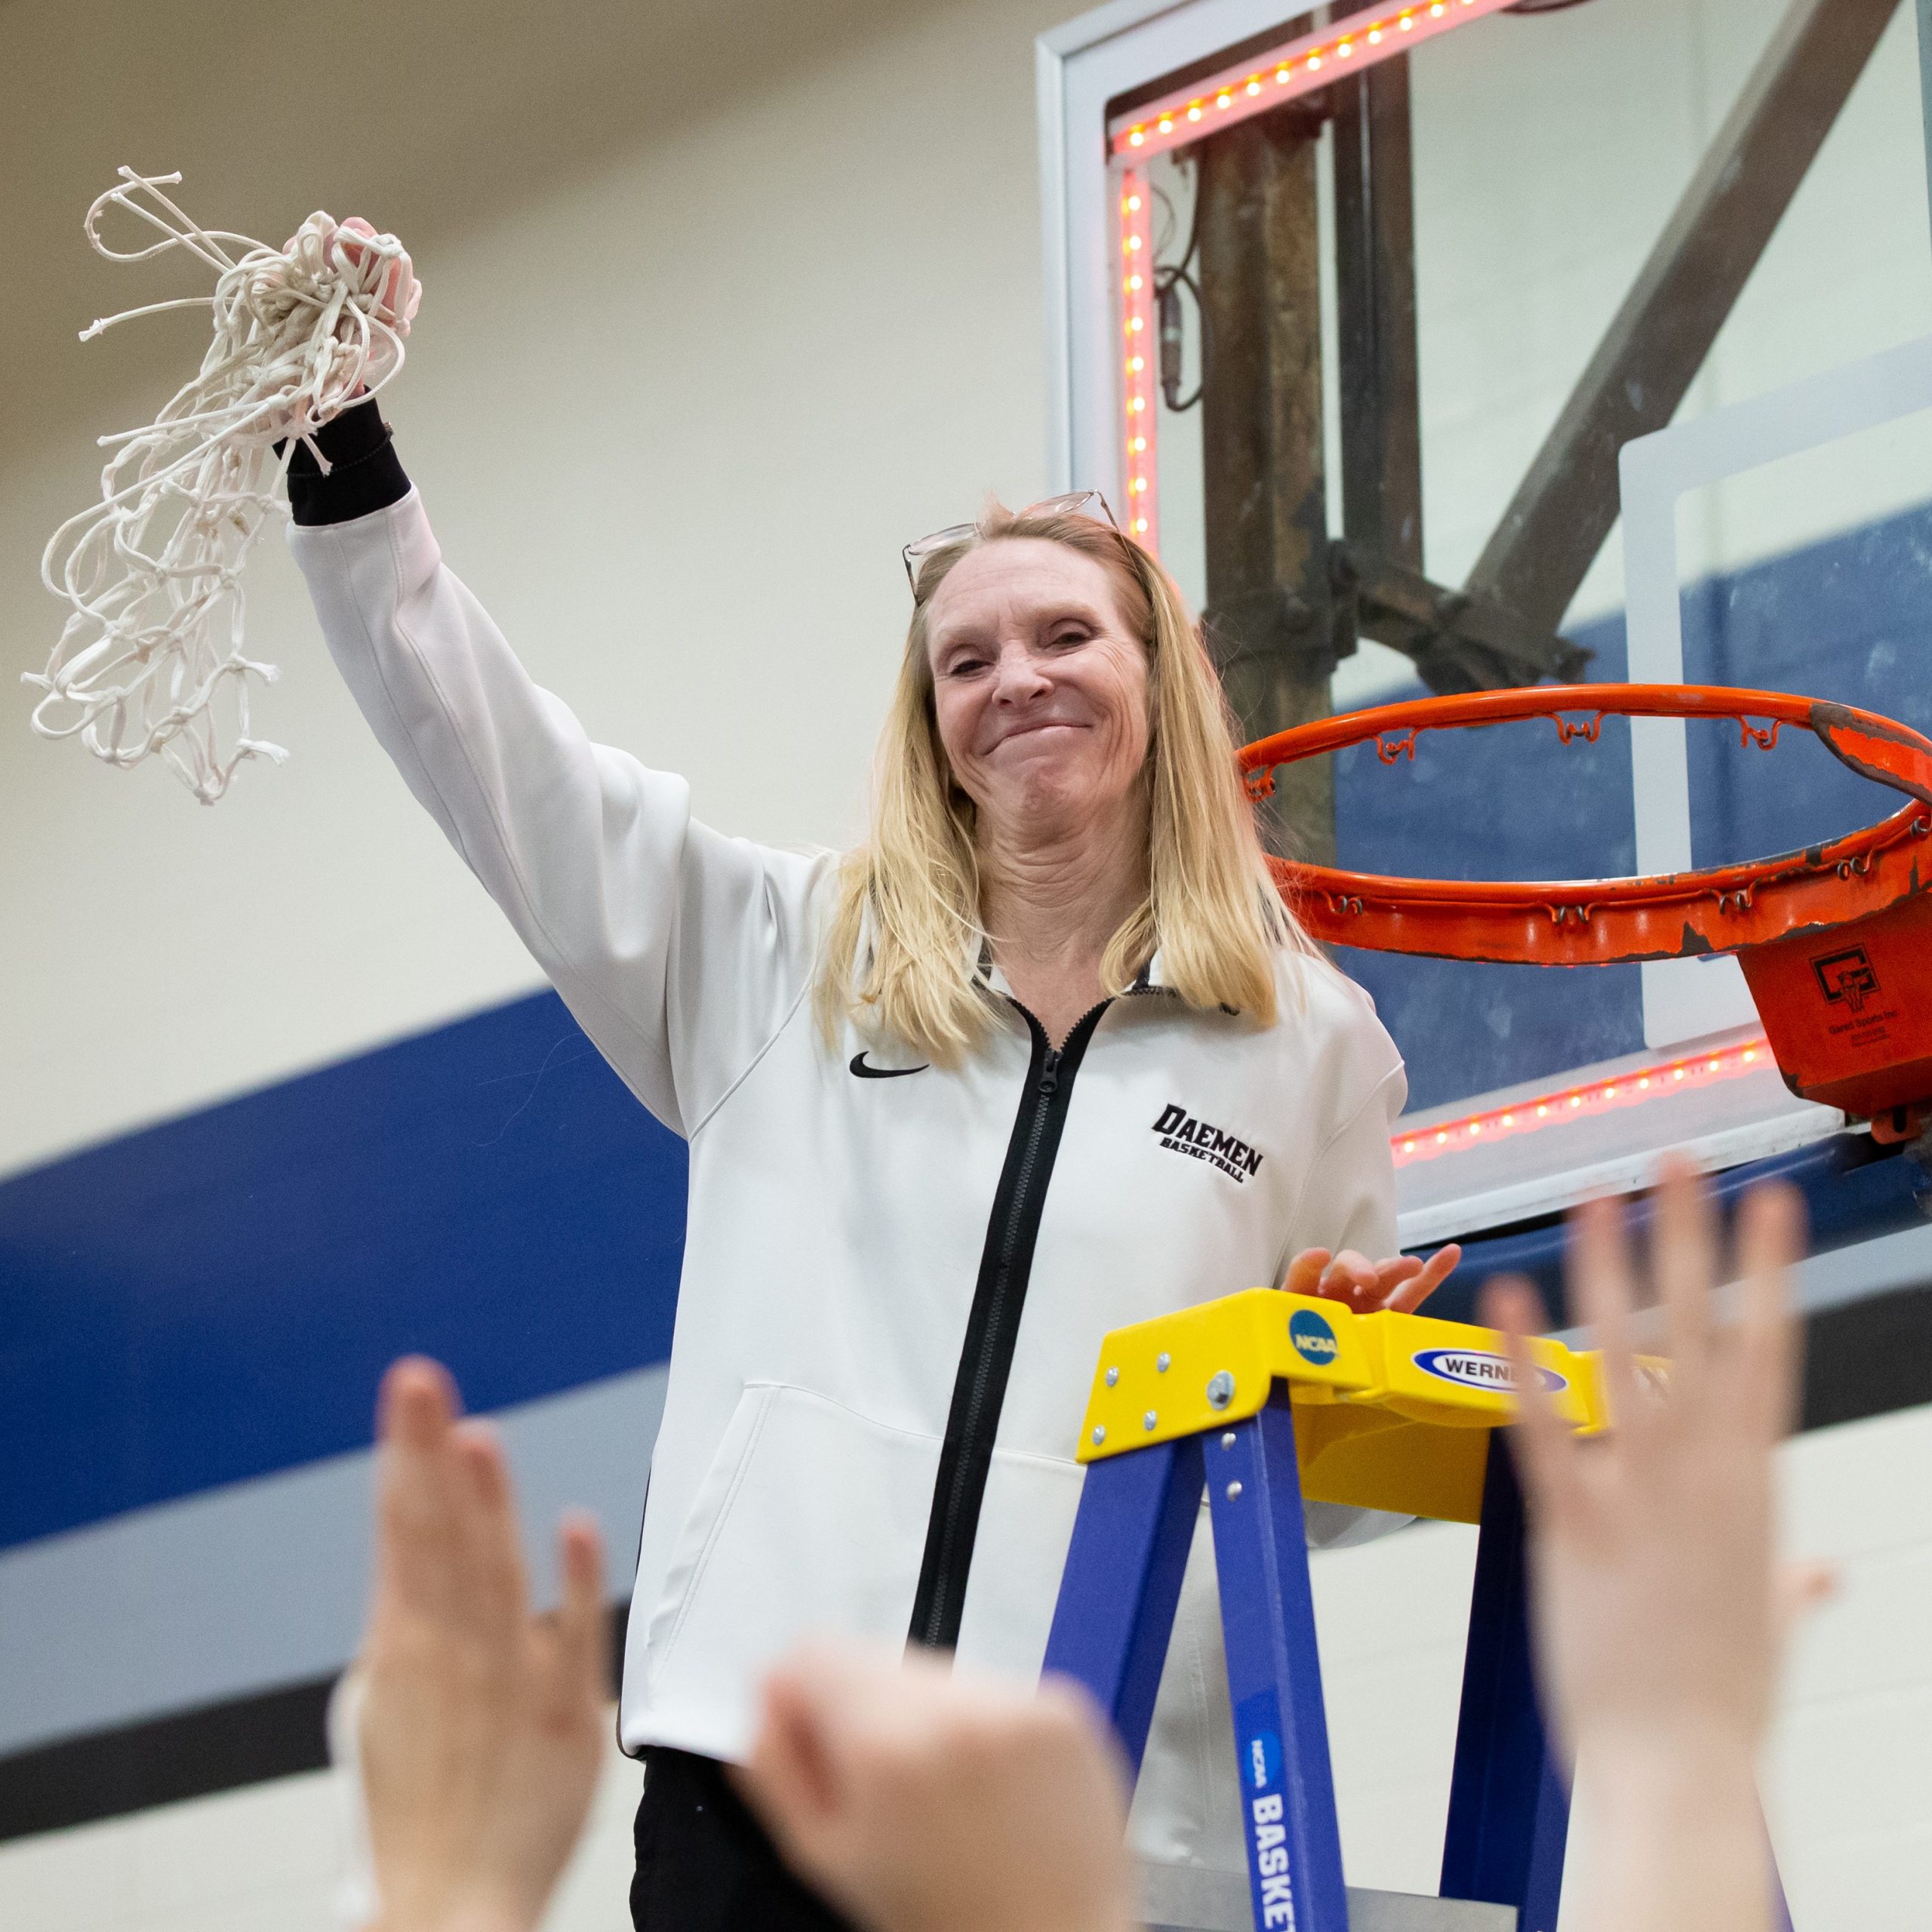 Womens basketball coach cutting down net after win